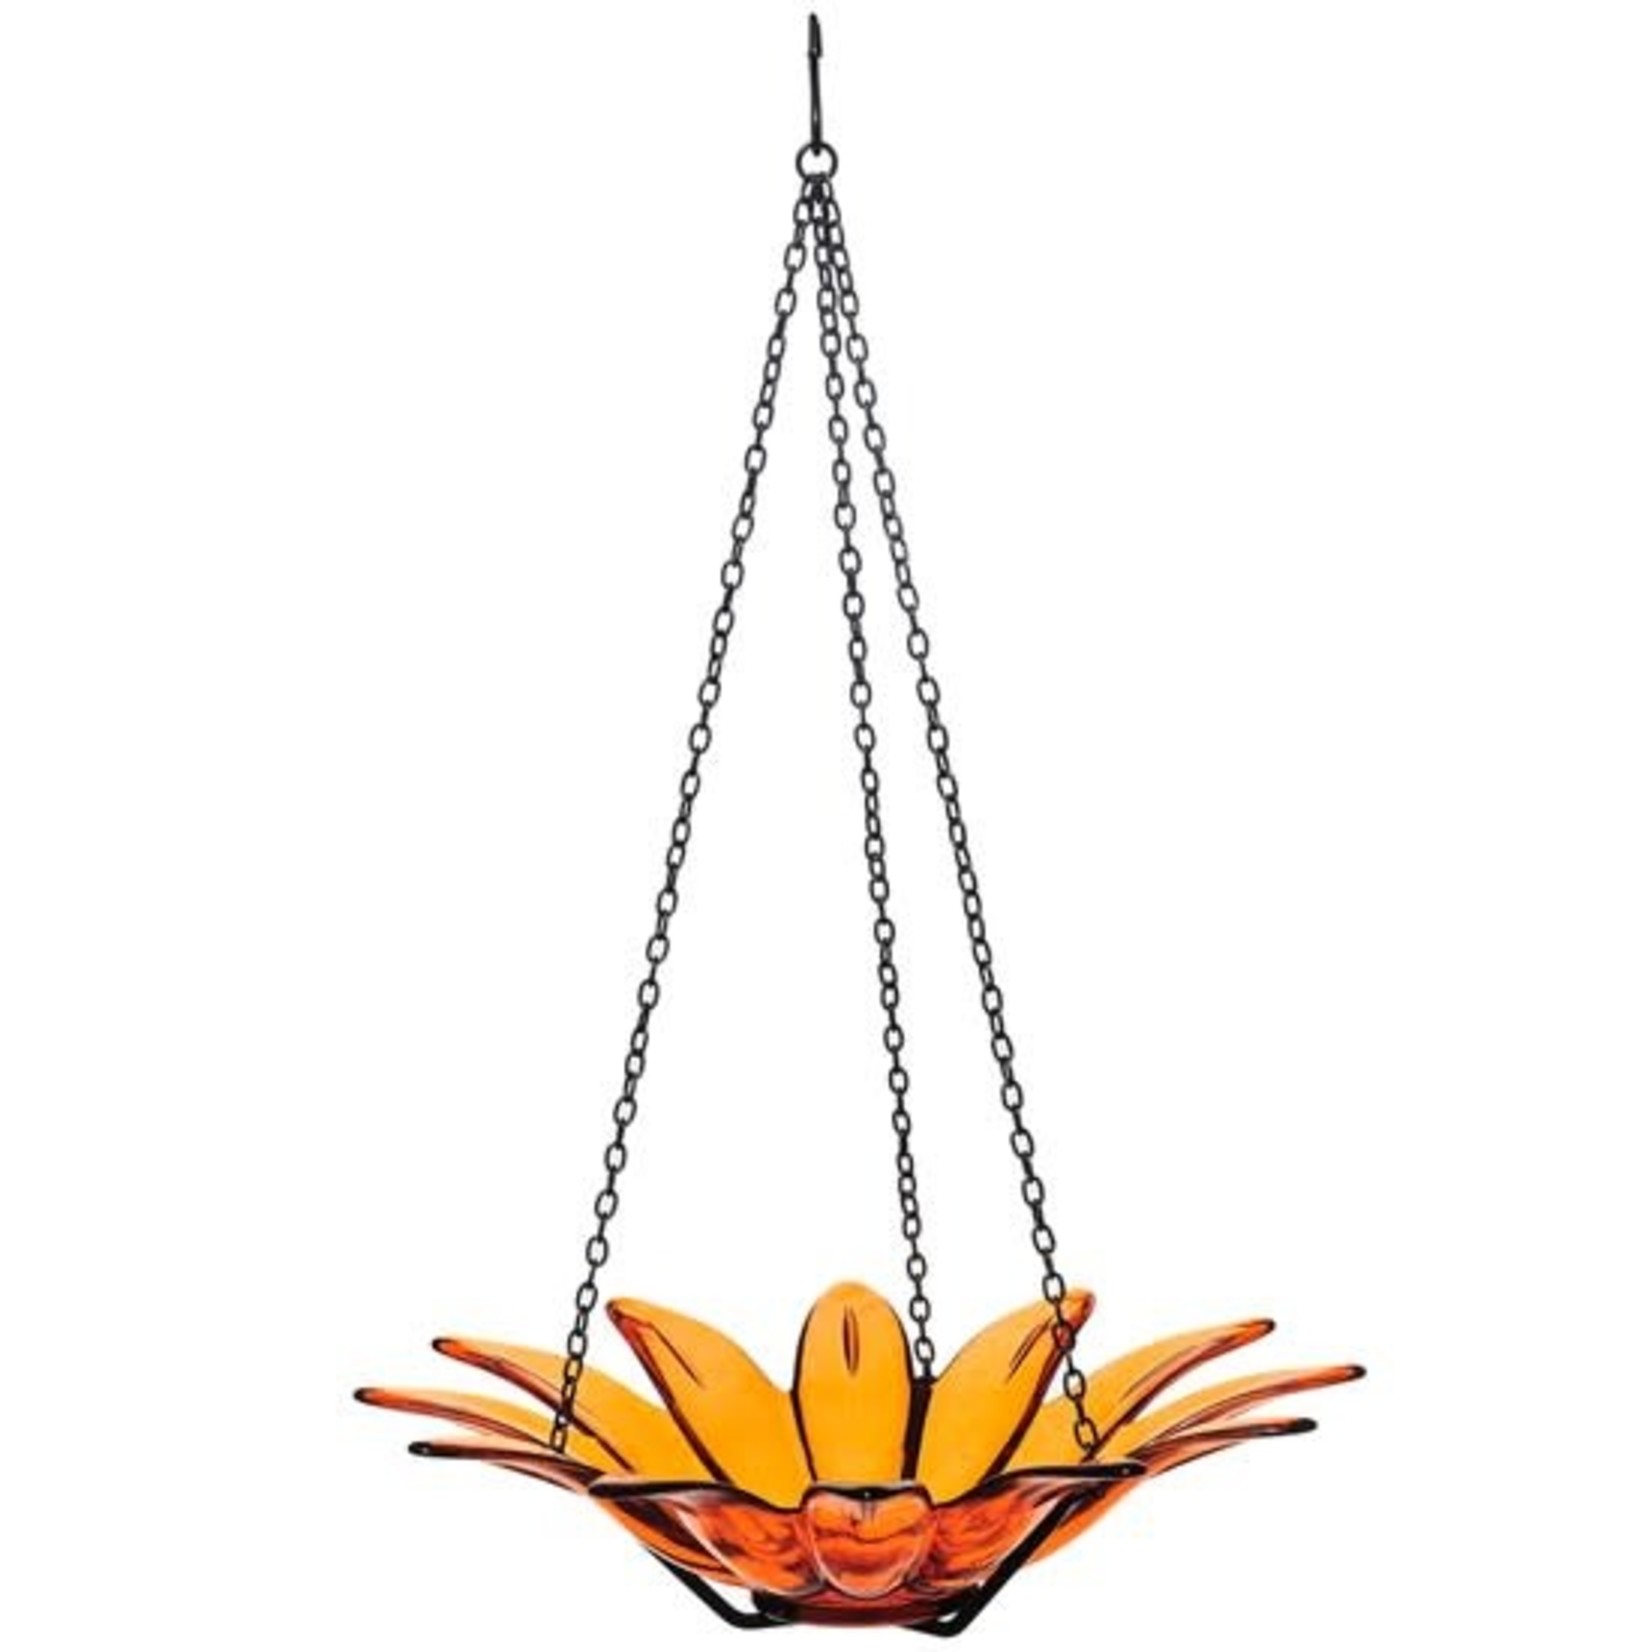 Daisy Hanging Bird Bath or Feeder 12" - Orange